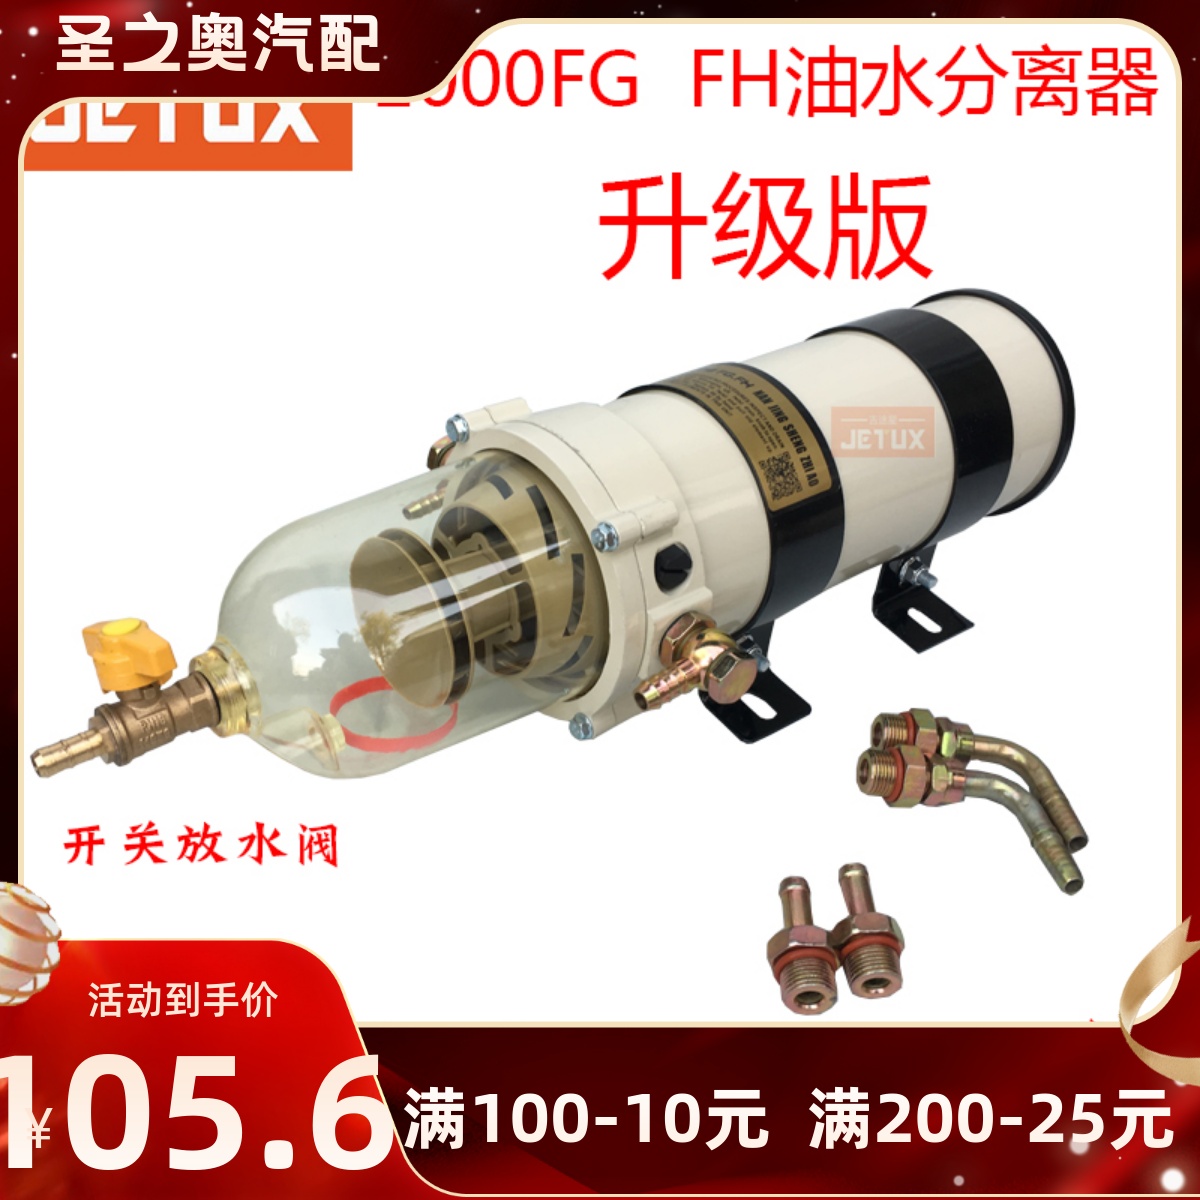 1000fg/1000fh油水分离器